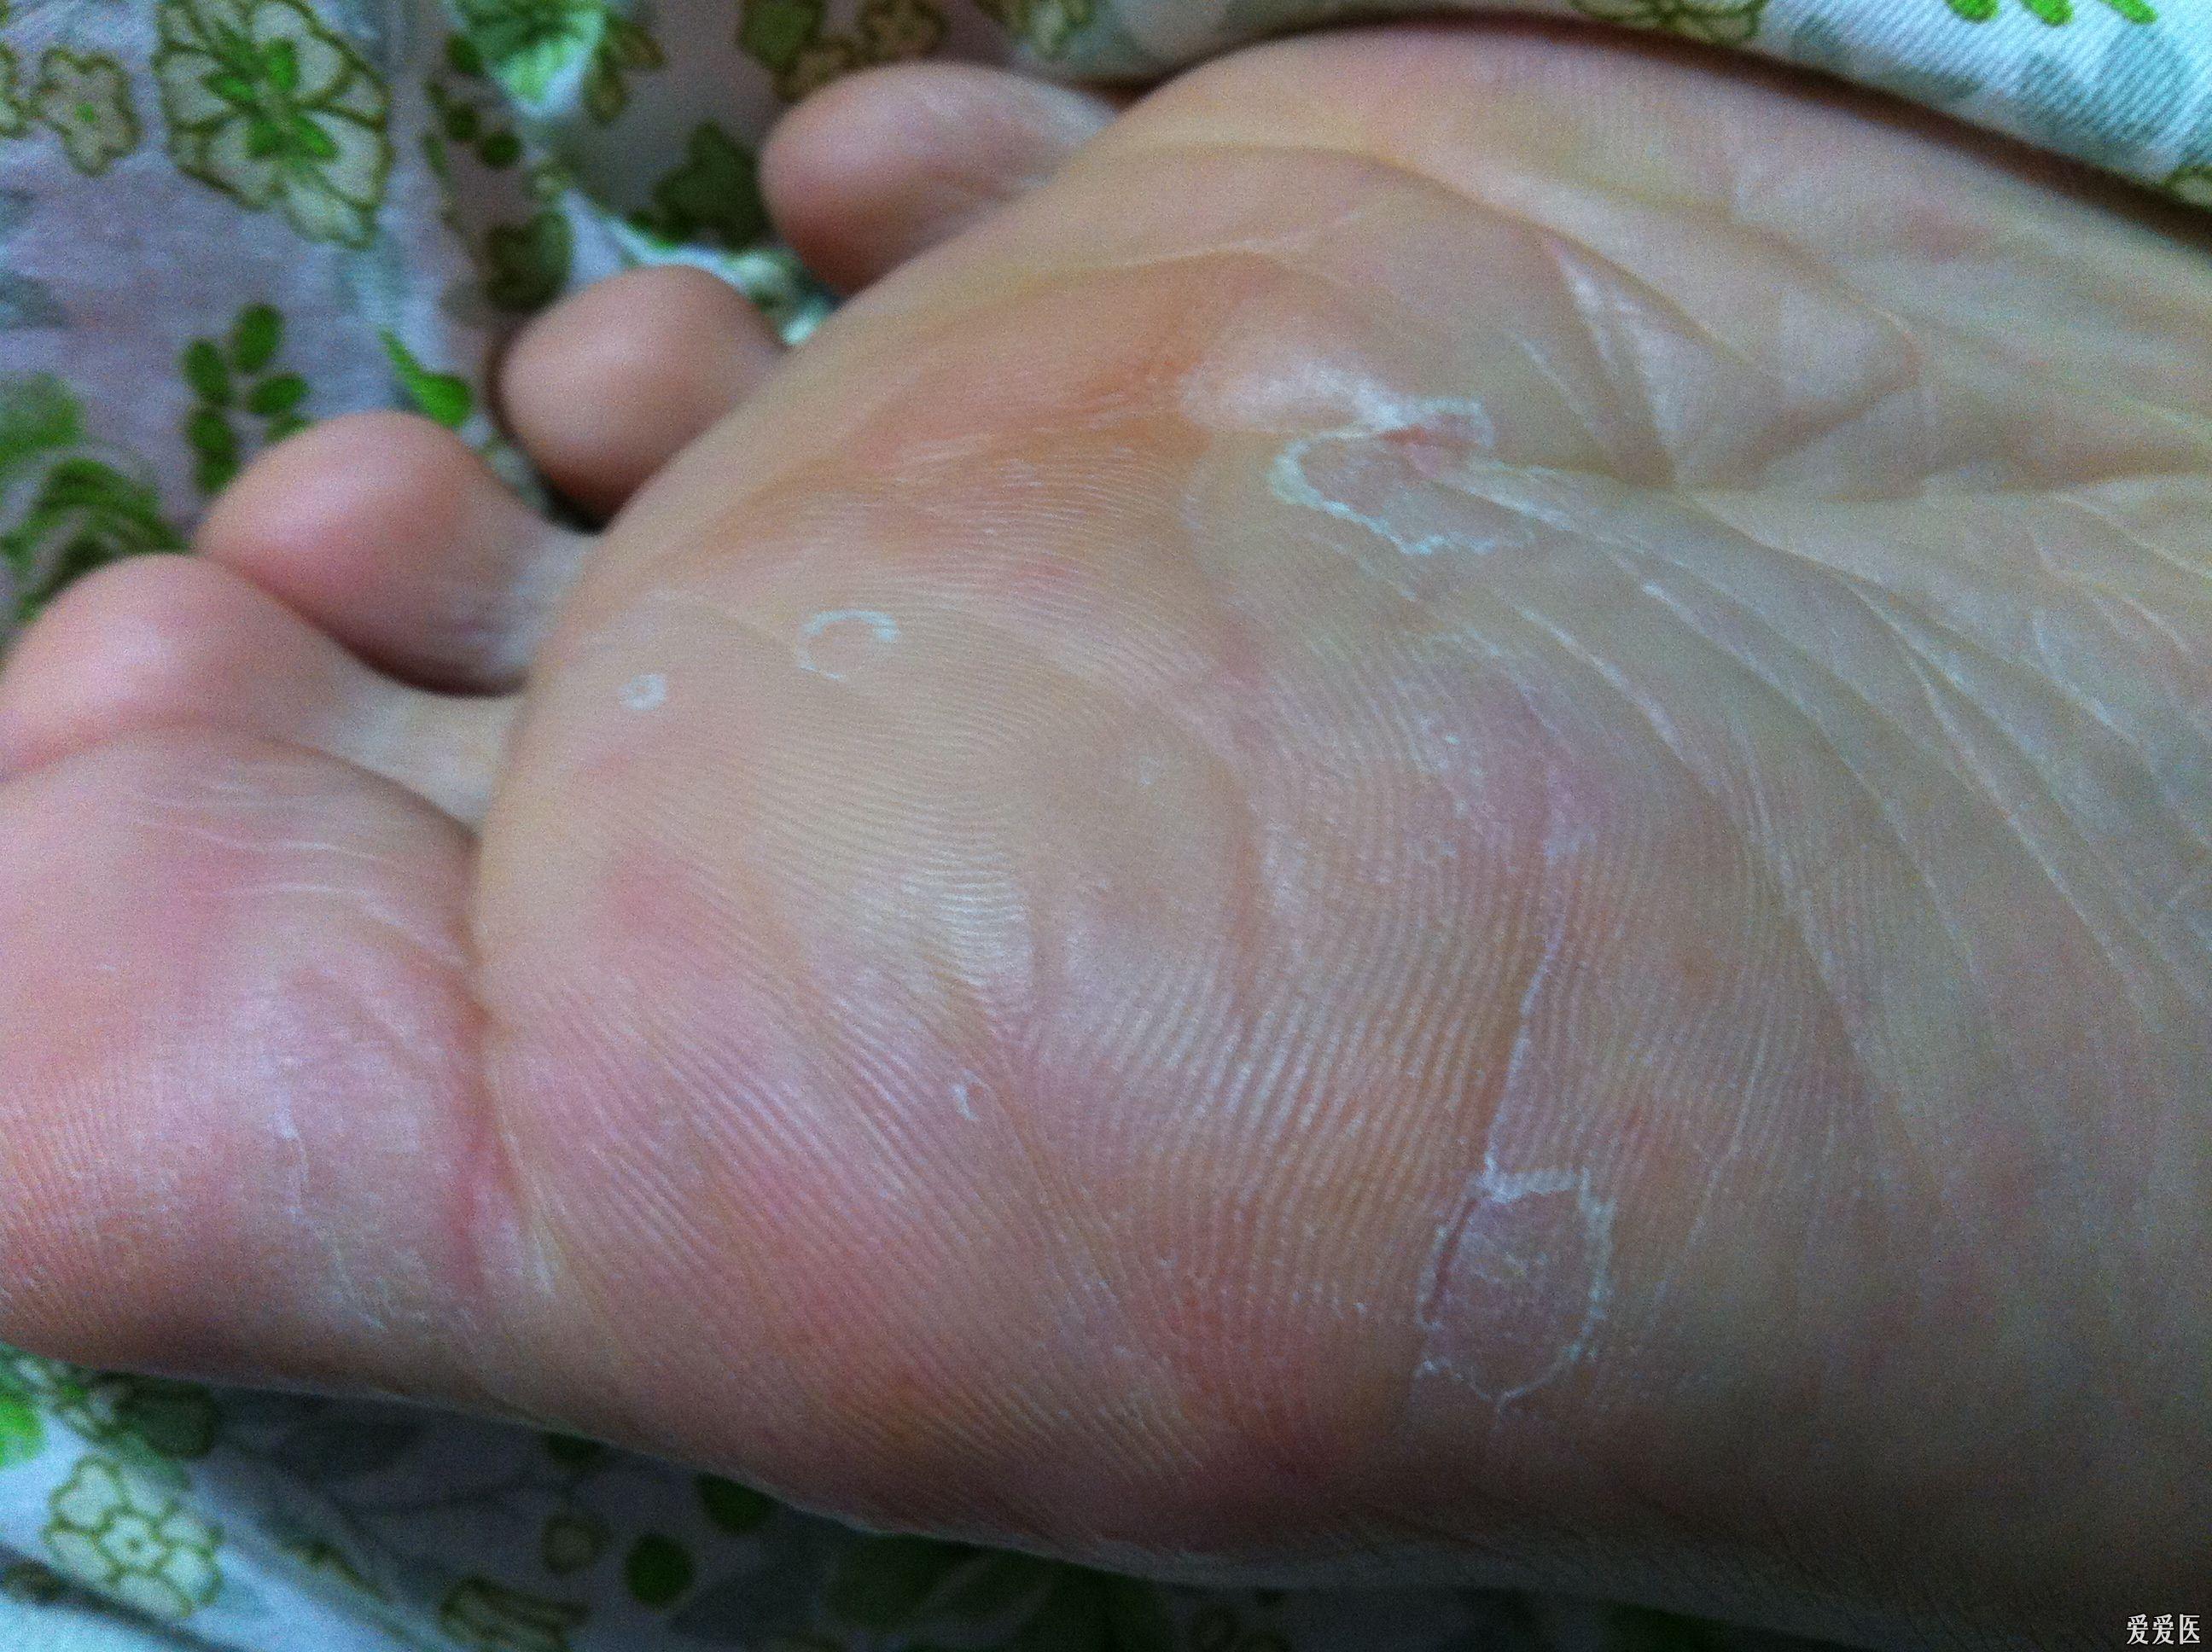 请问这是脚癣还是湿疹或者其他的基层小医生求教